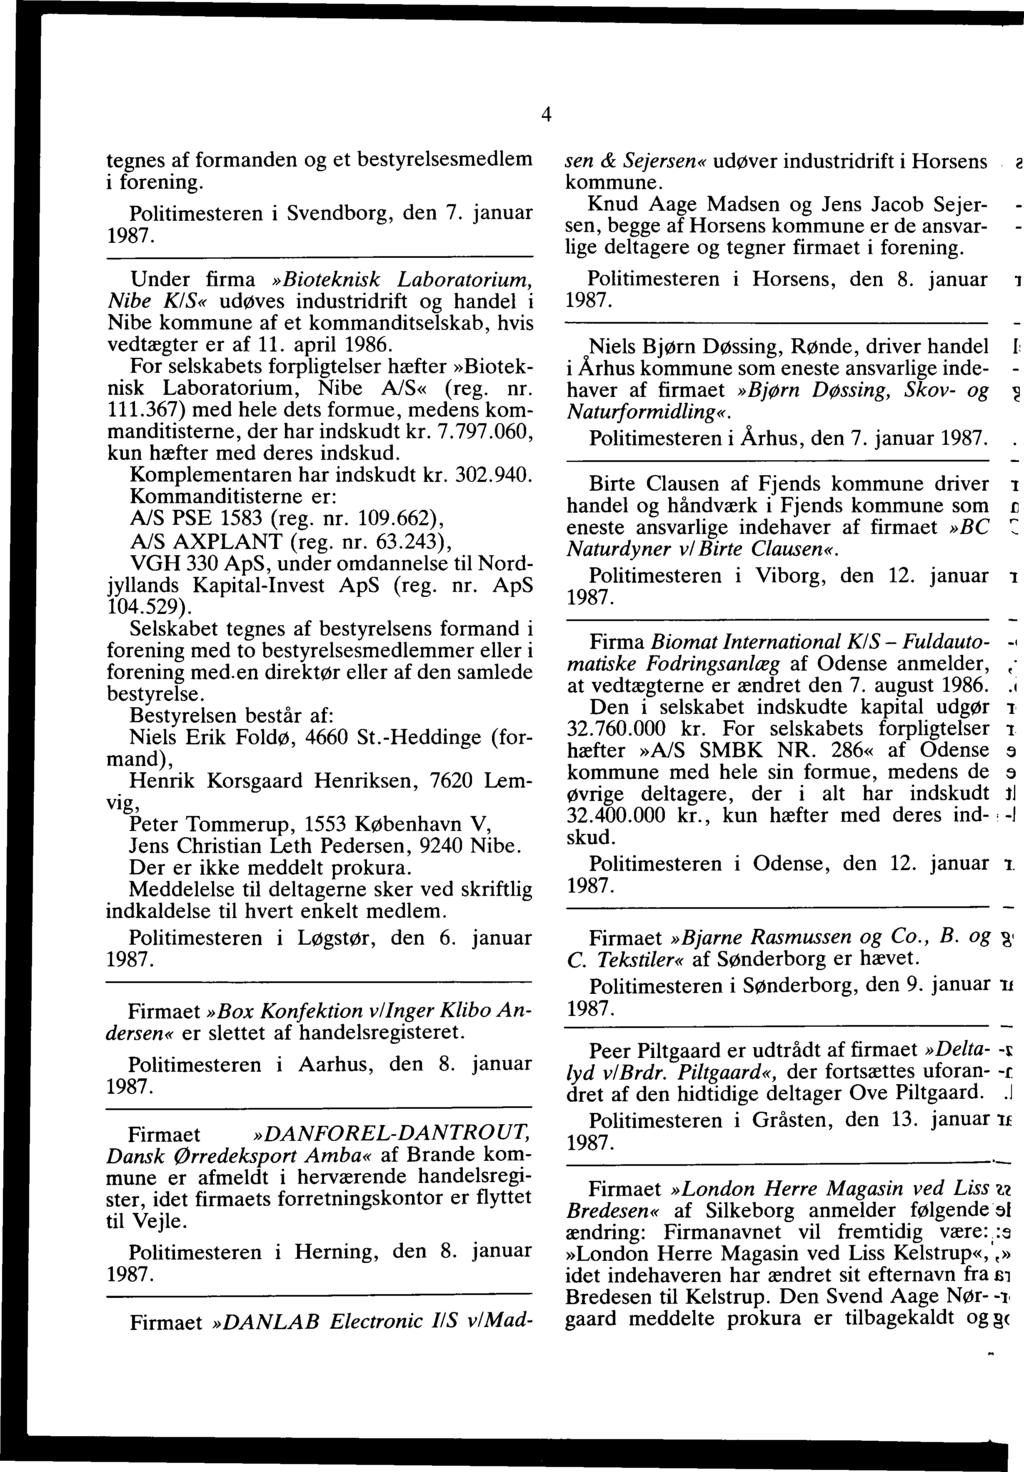 1987 Anmeldelser, bekendtgjort i Statstidende i måned N r. 1 - PDF Gratis download